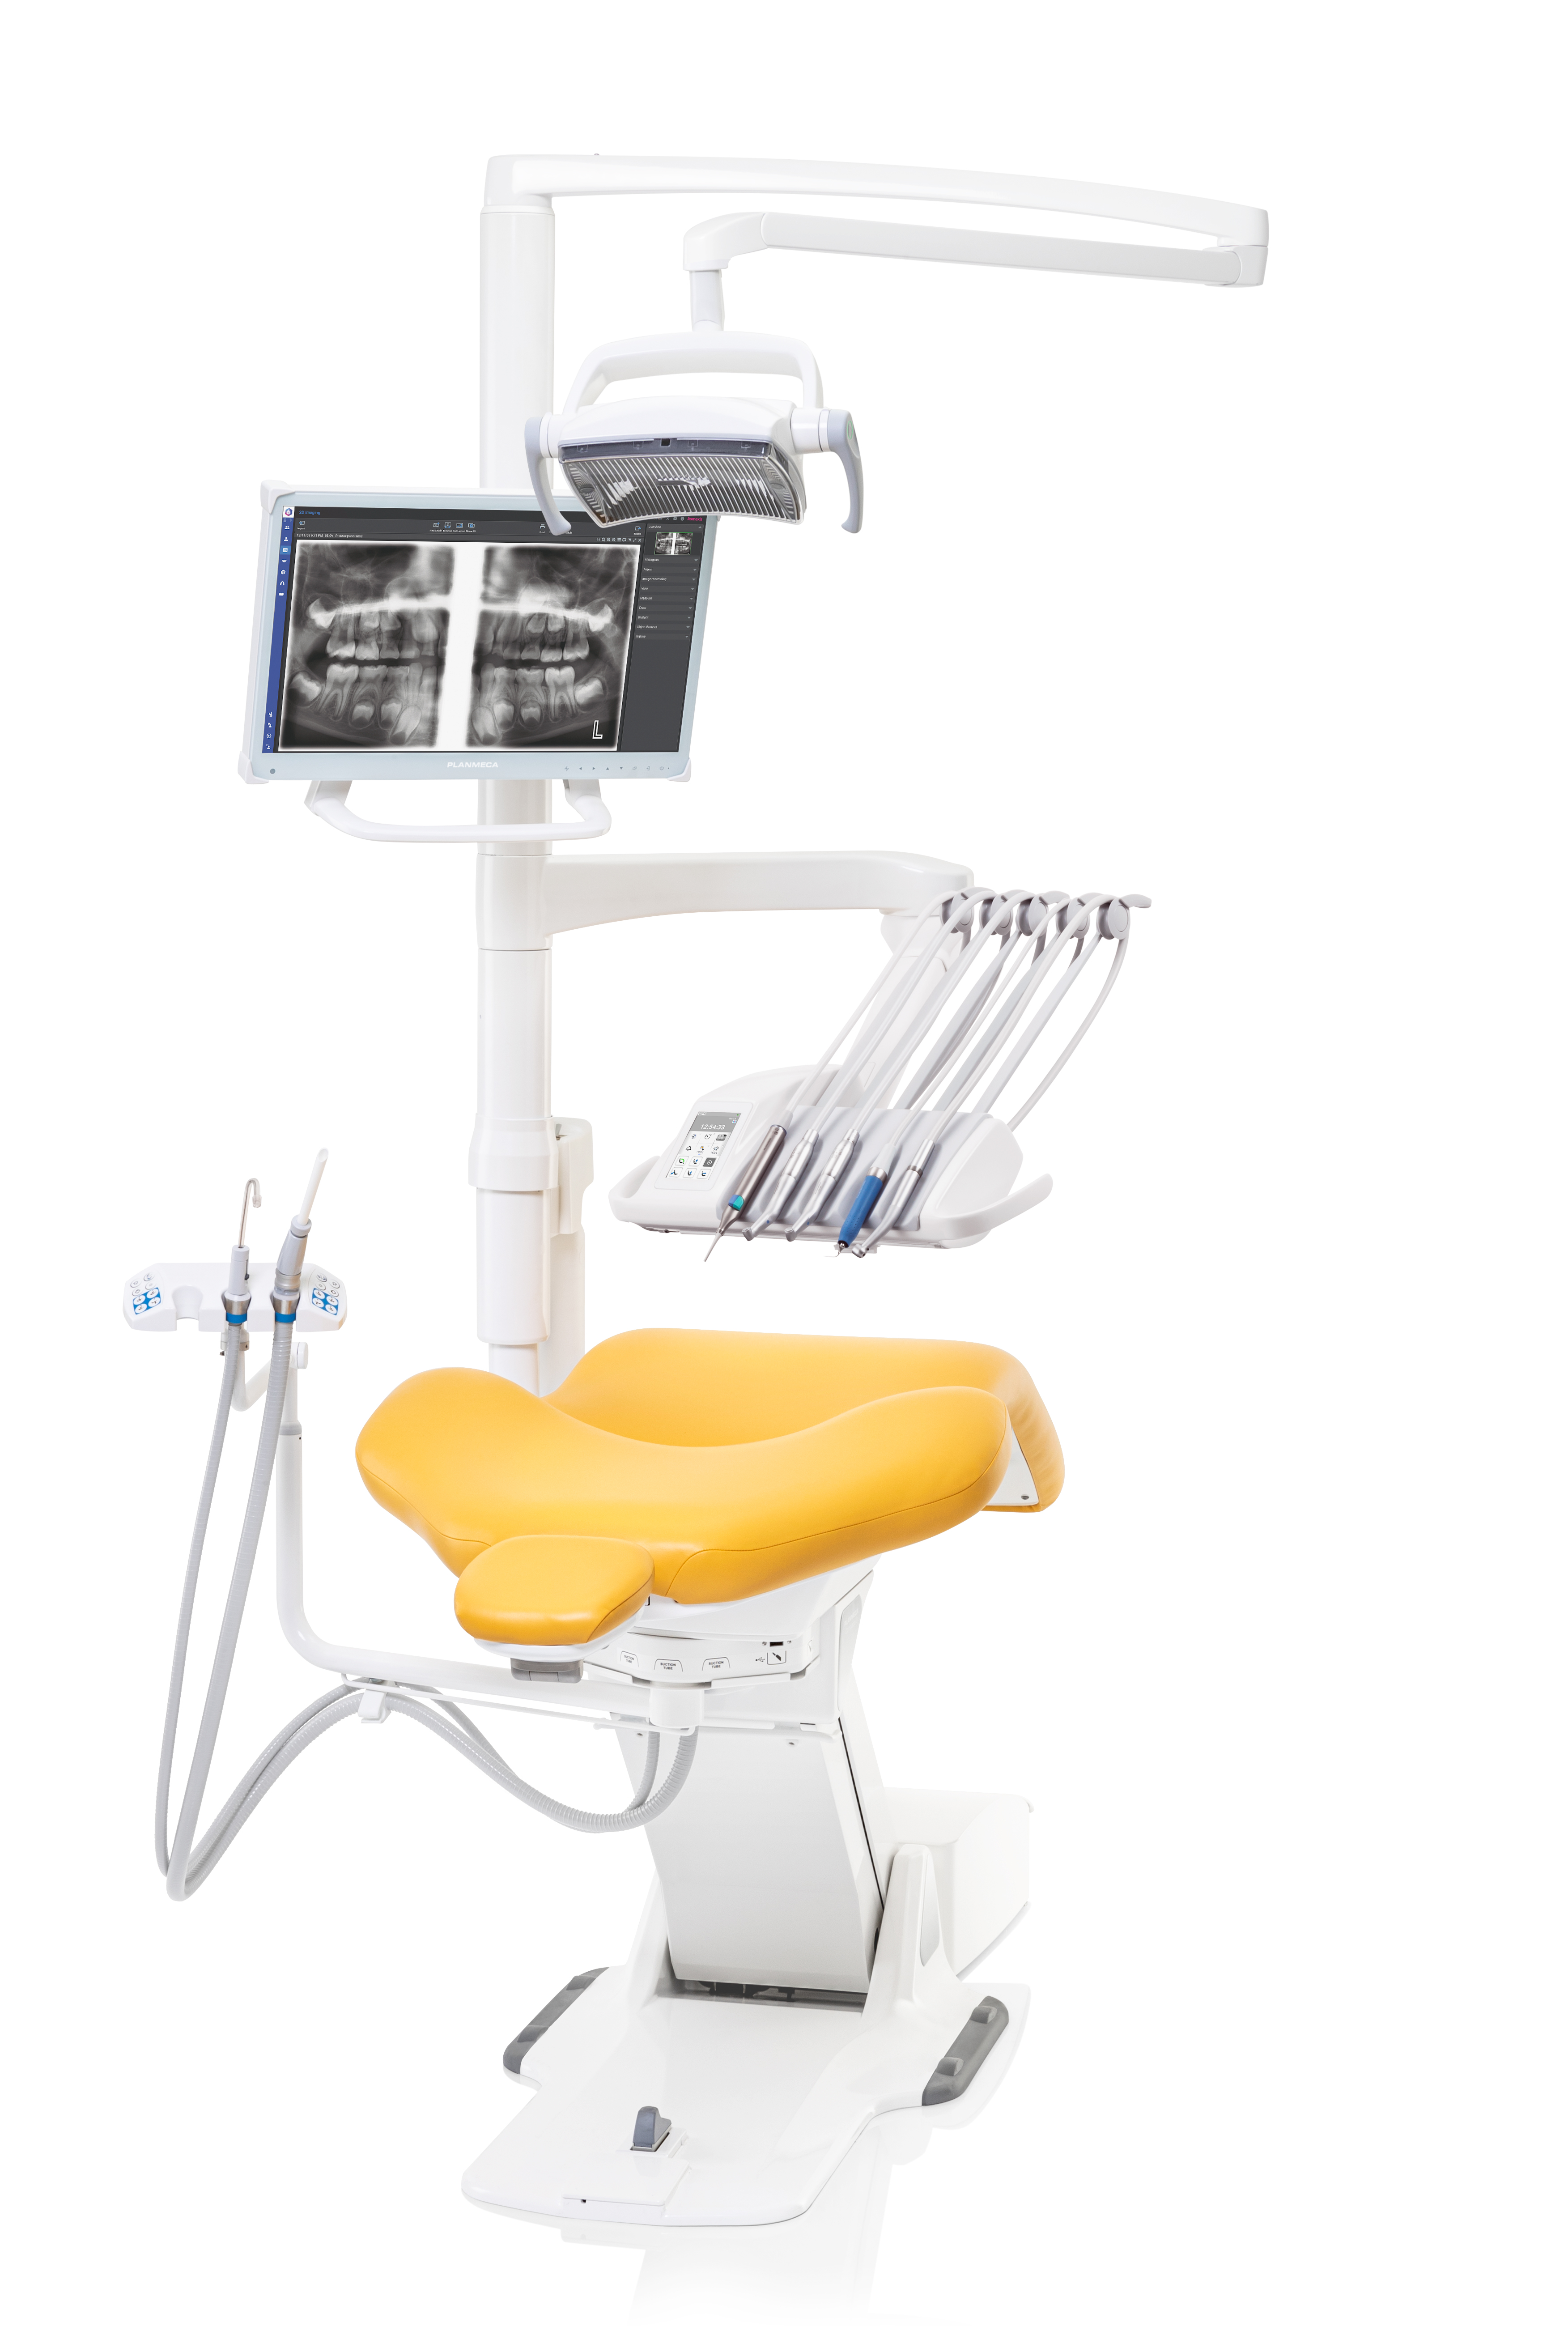 Le nouvel unit dentaire Planmeca offre la fonctionnalité et la flexibilité dont ont besoin tous les dentistes